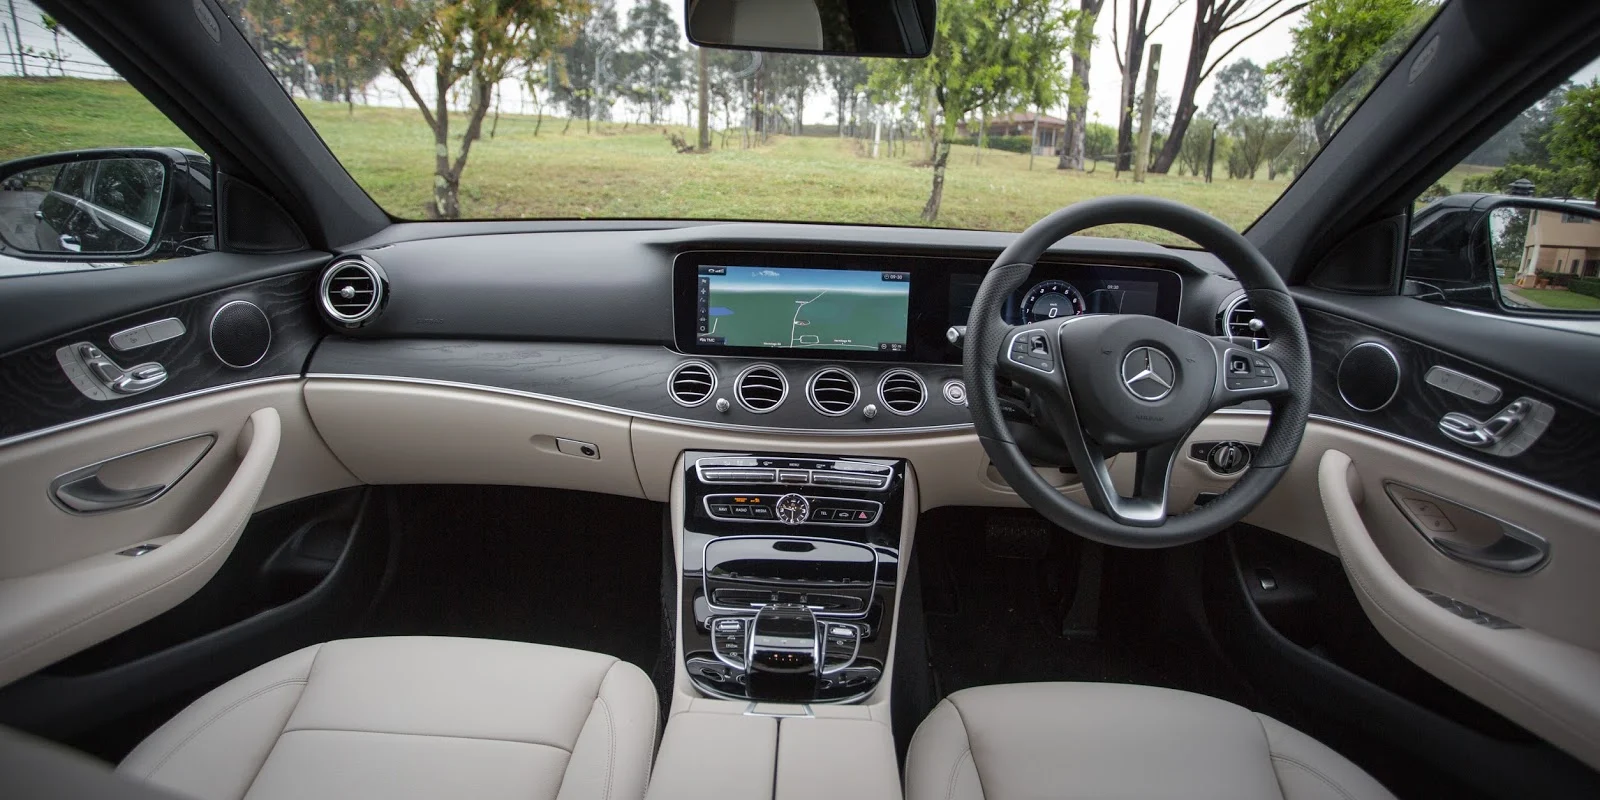 Khoang điều khiển của Mercedes Benz E200 2017 thực sự quá ấn tượng